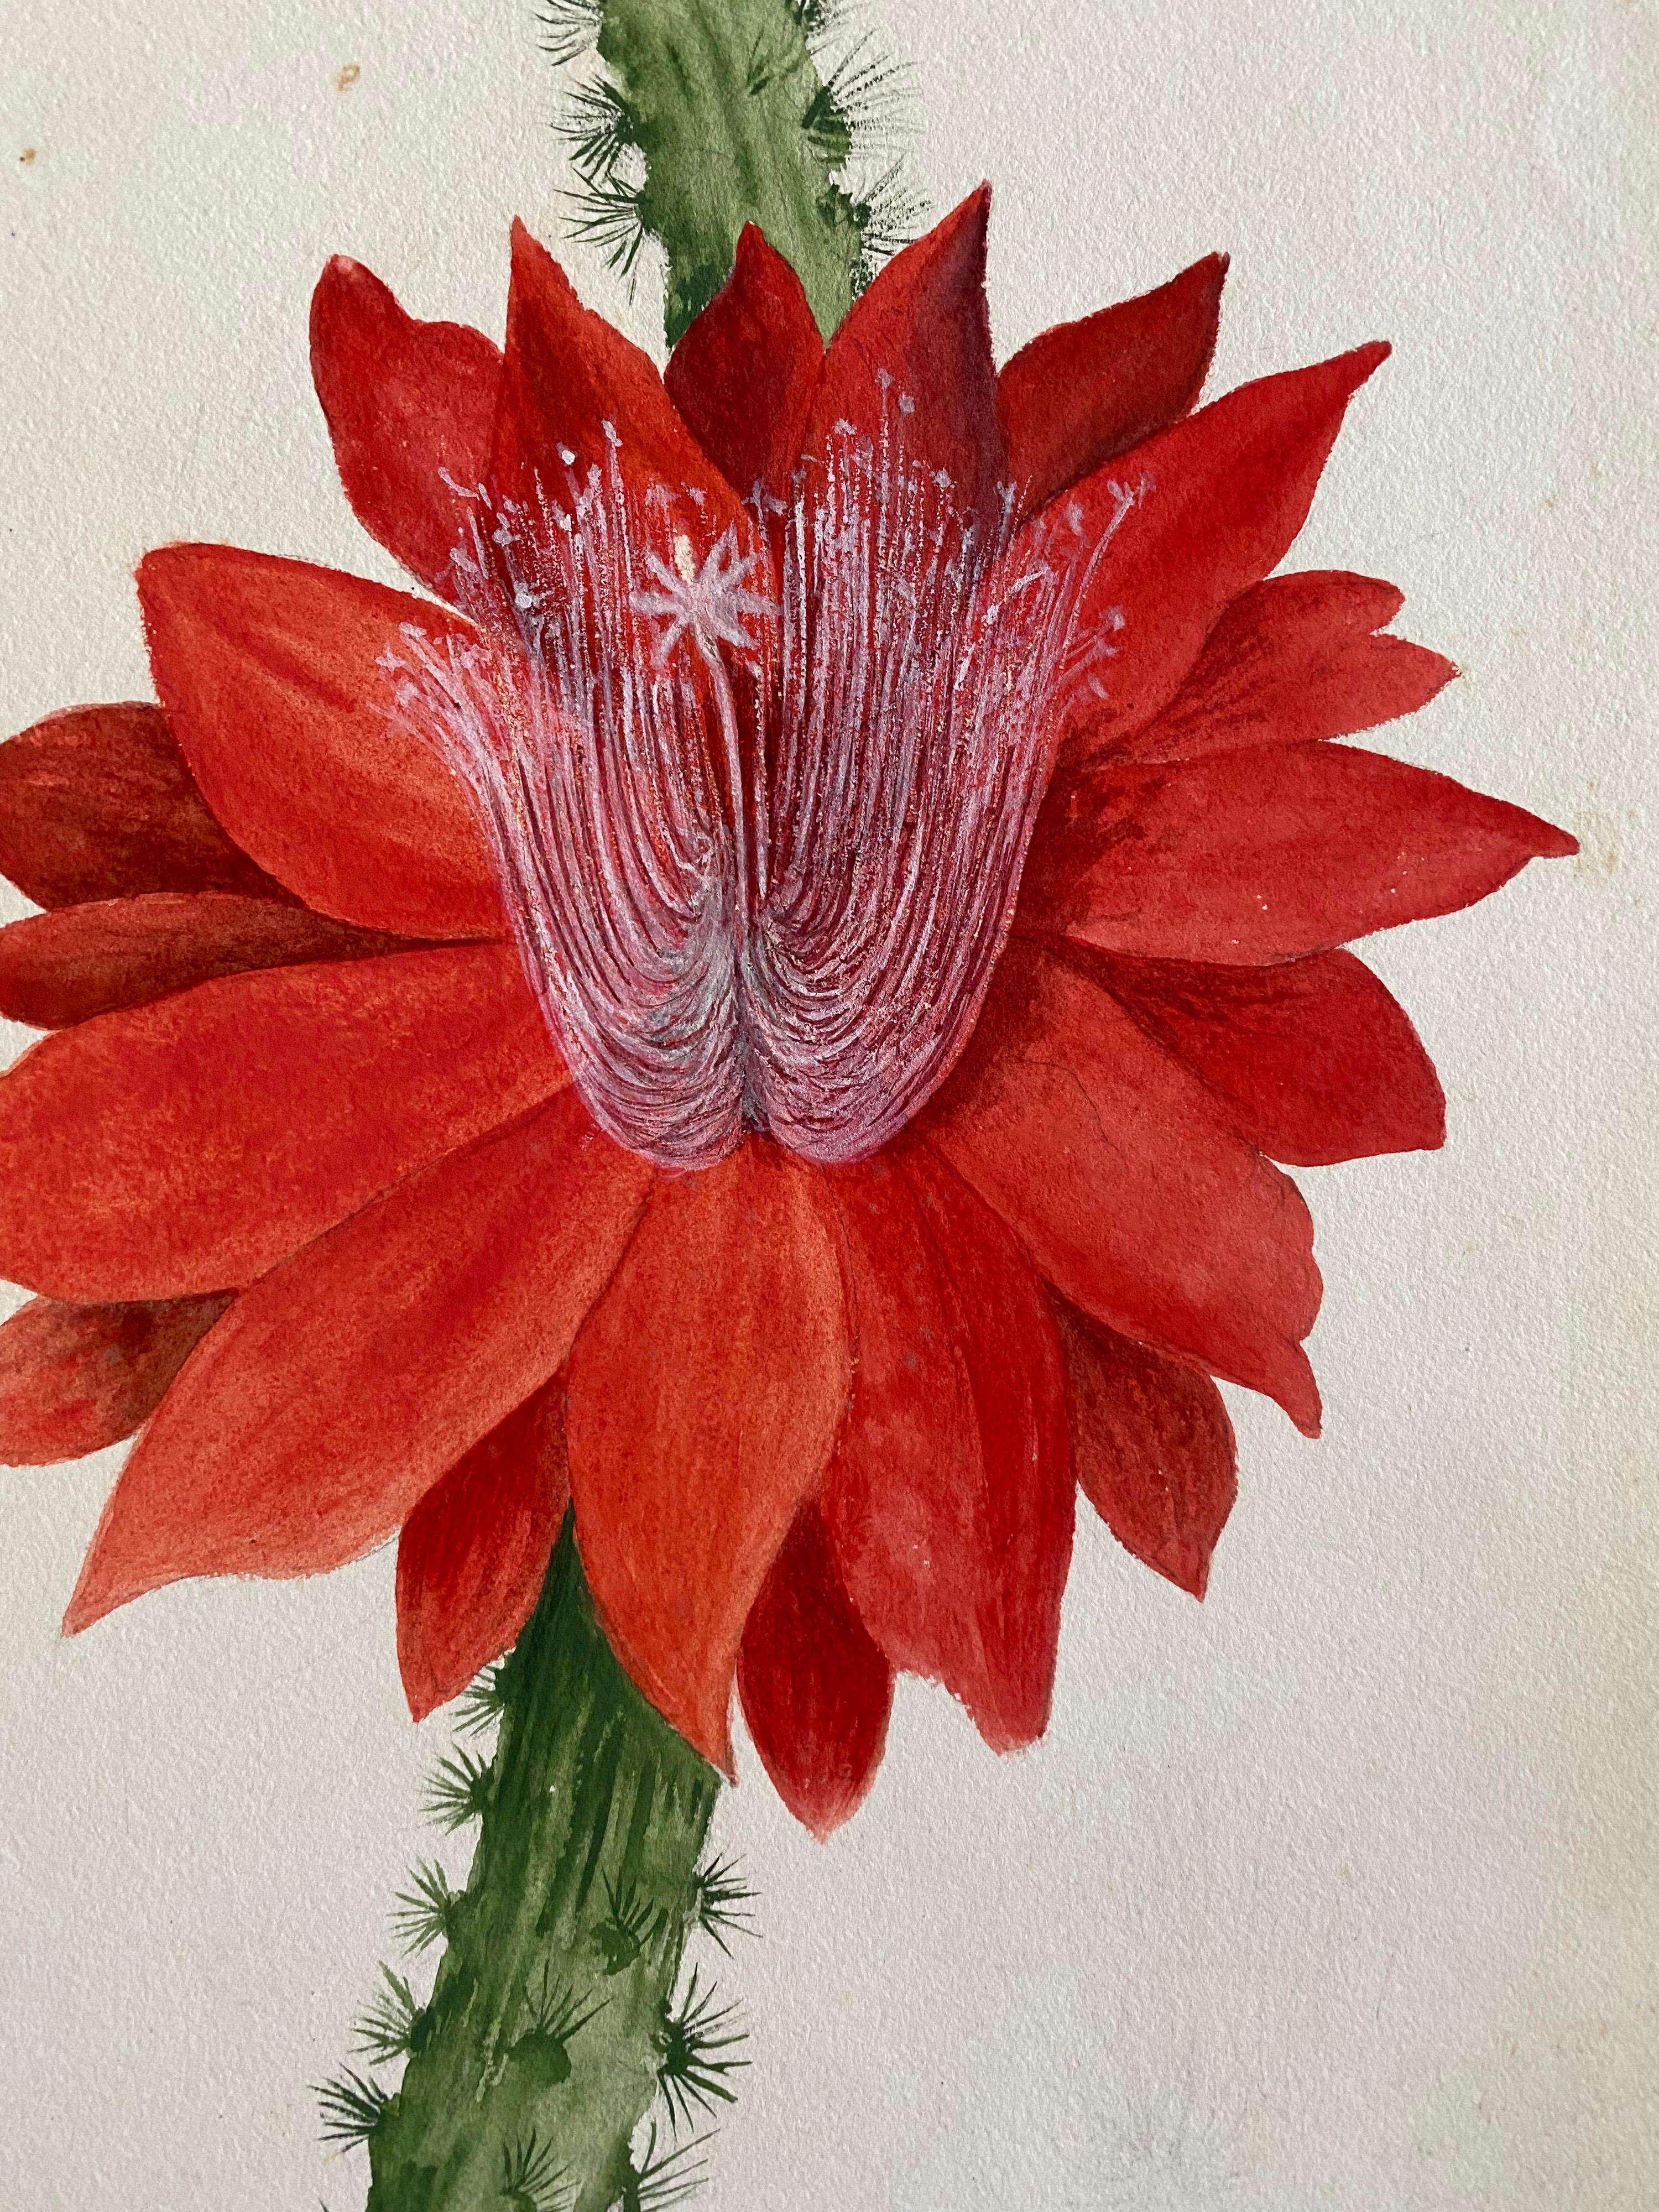 Belle peinture à l'aquarelle abstraite britannique ancienne de style bohémien, fleur rouge, vers 1900 - Art de Caroline Worsley